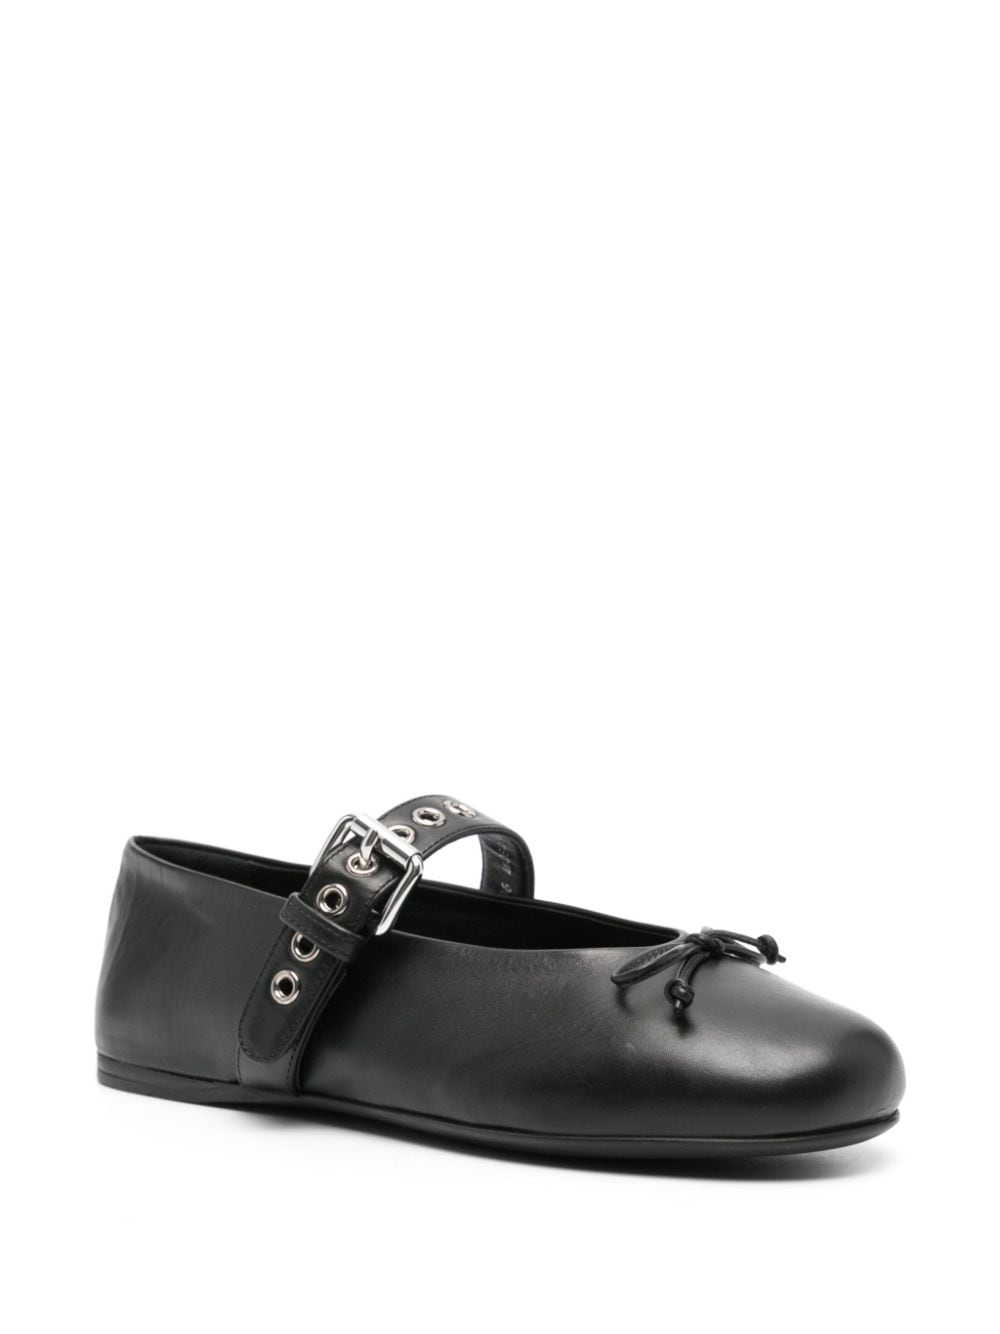 Miu Miu leather ballerina shoes - Zwart